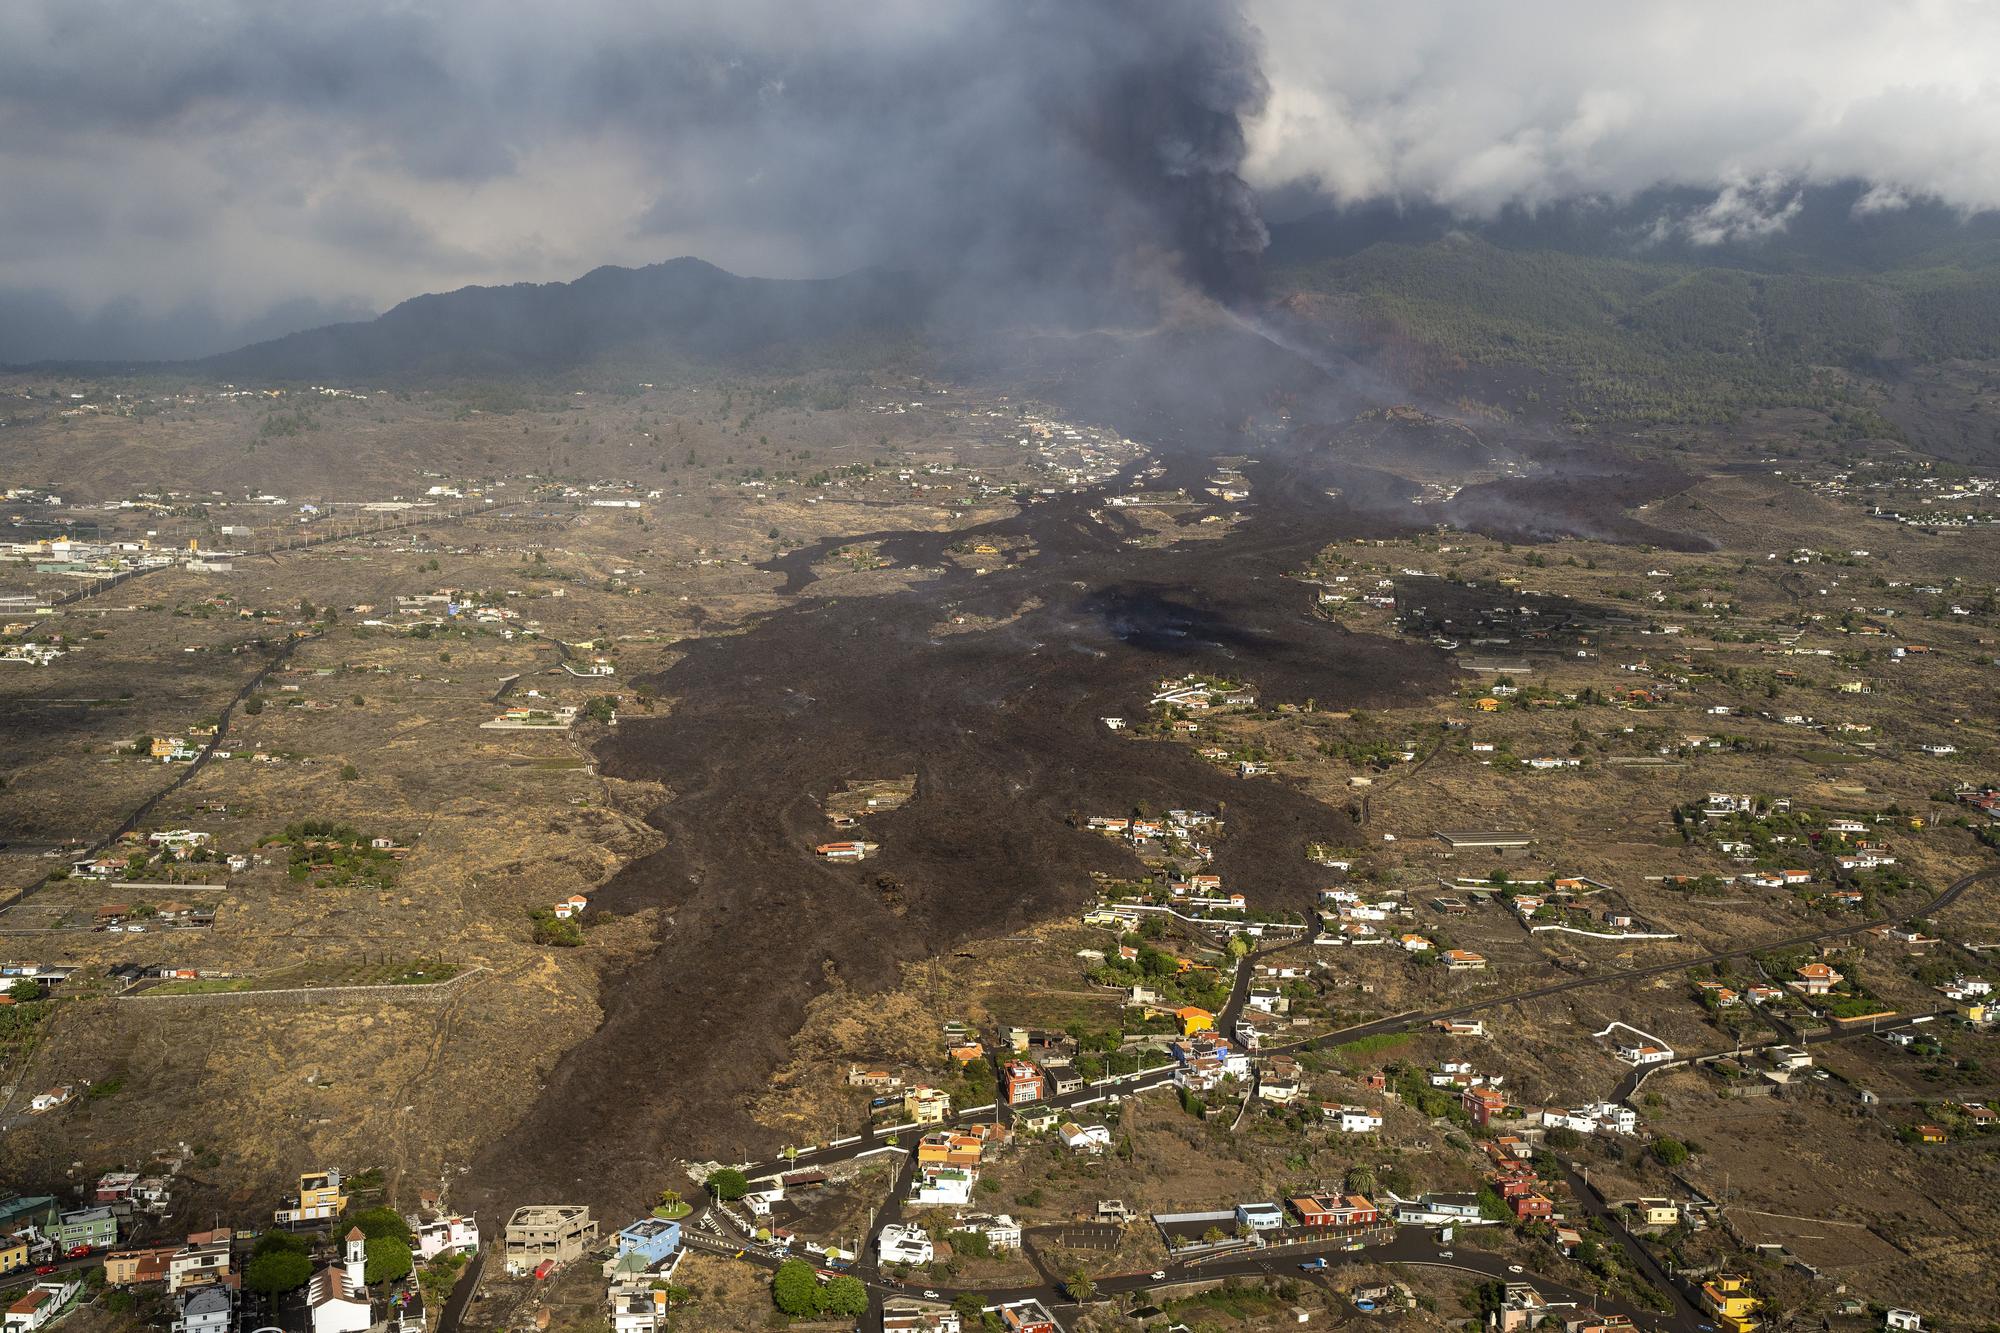 Erupción volcánica: Imágenes aéreas de la zona afectada